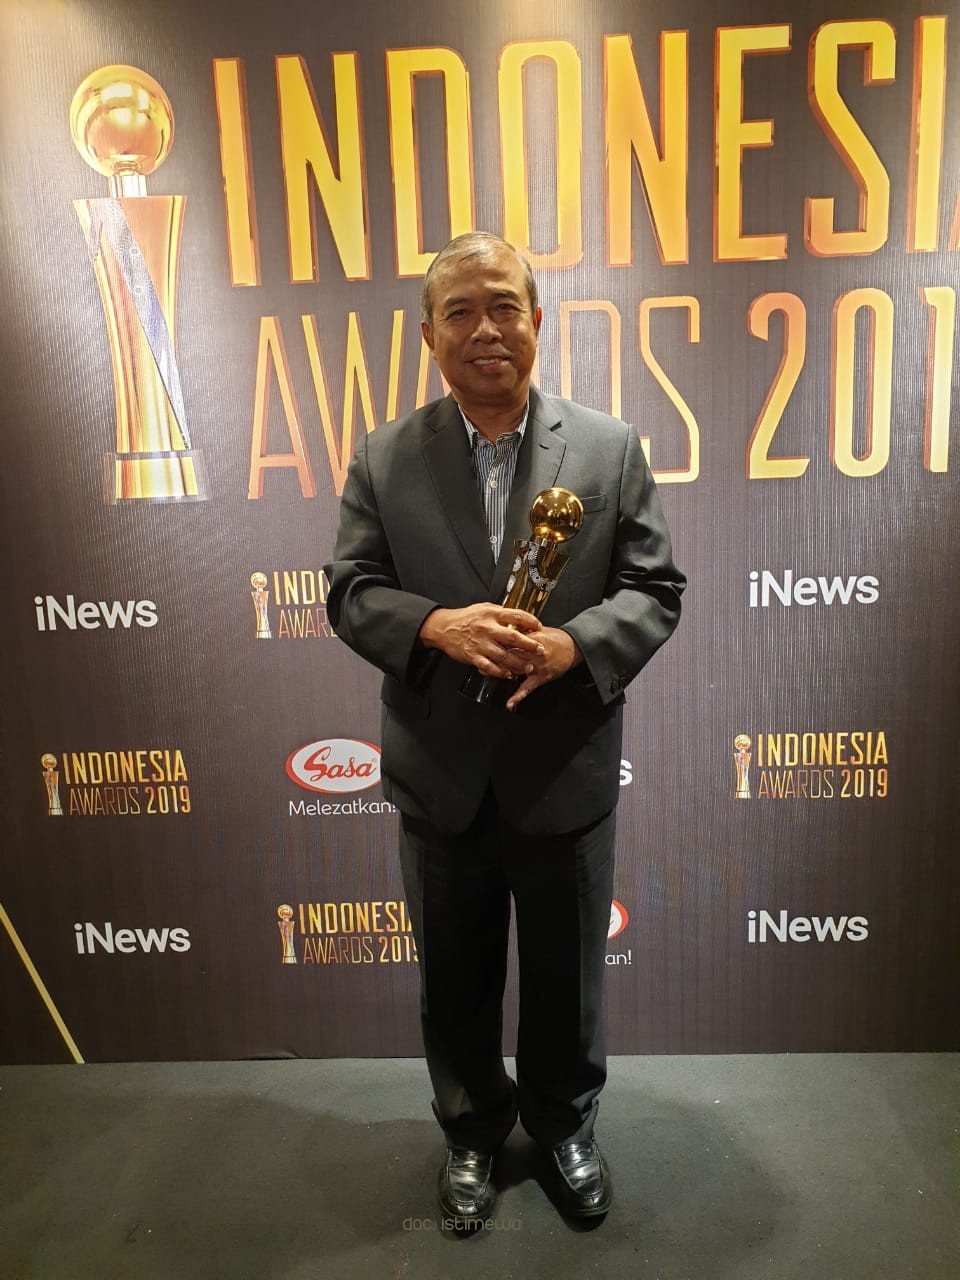 Inovasi Sakera Jempol Raih Penghargaan Indonesia Awards 2019